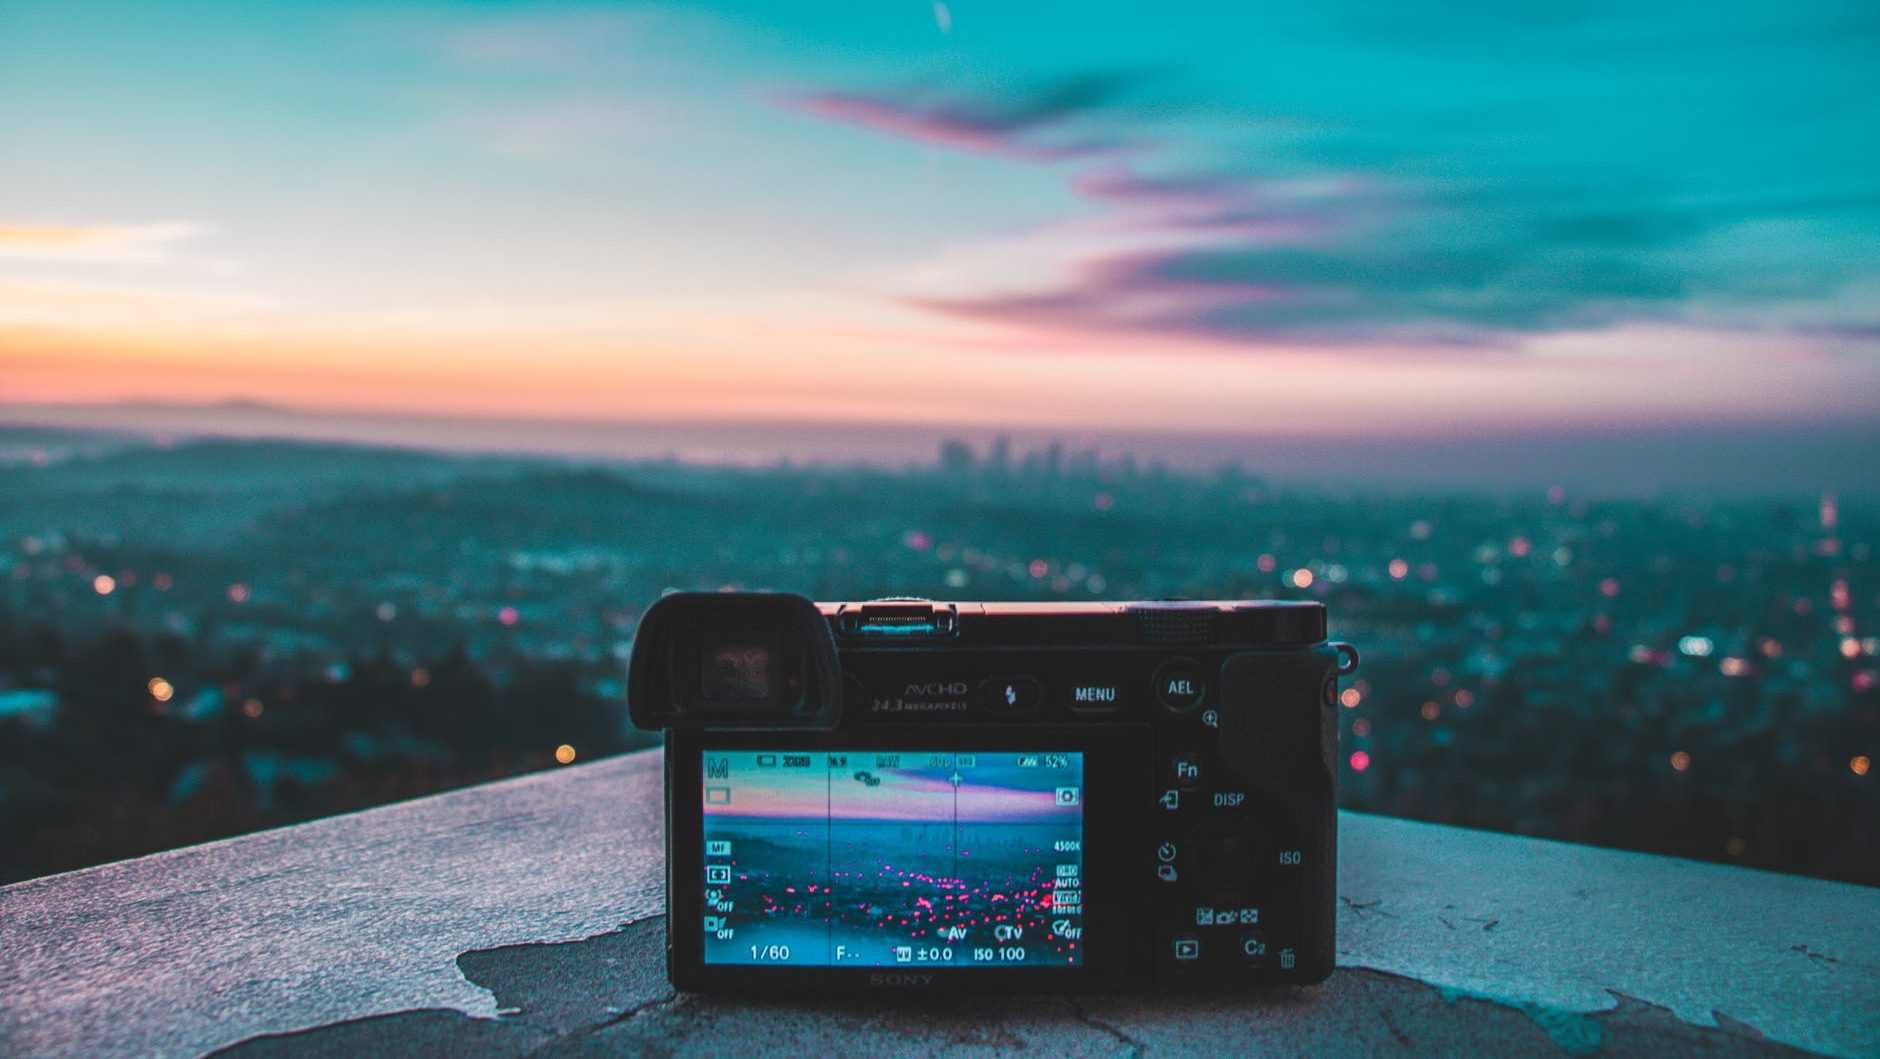 Camera filmt uitzicht op stad